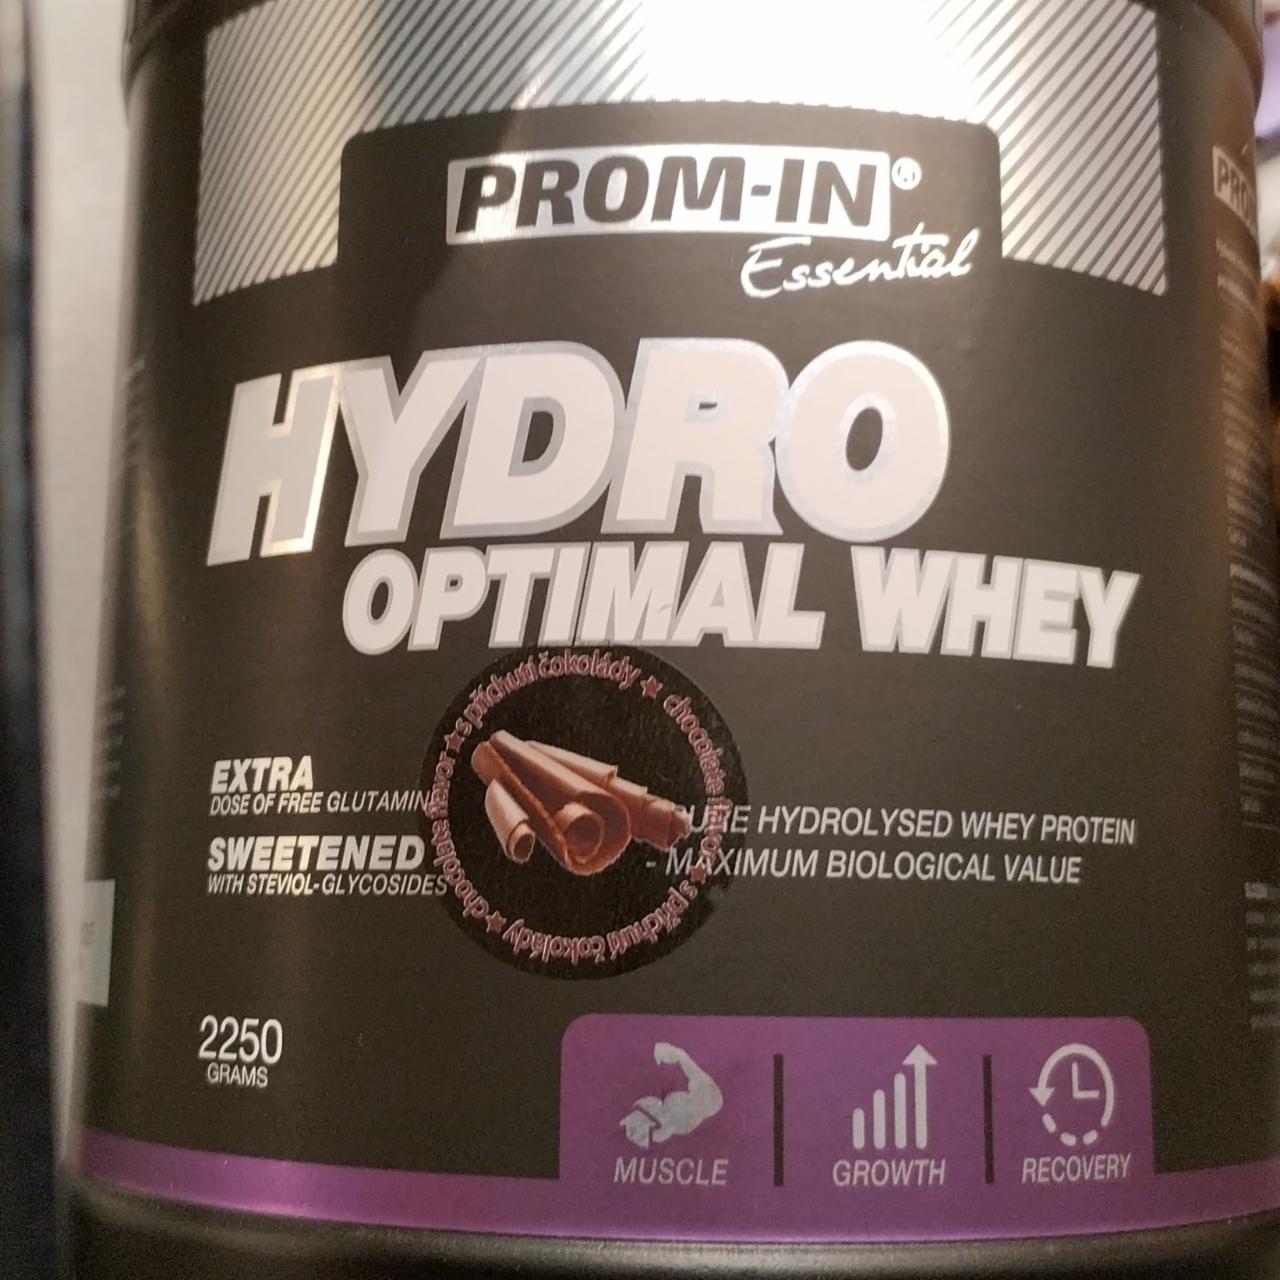 Fotografie - Hydro optimal Whey s příchutí čokolády Prom-in